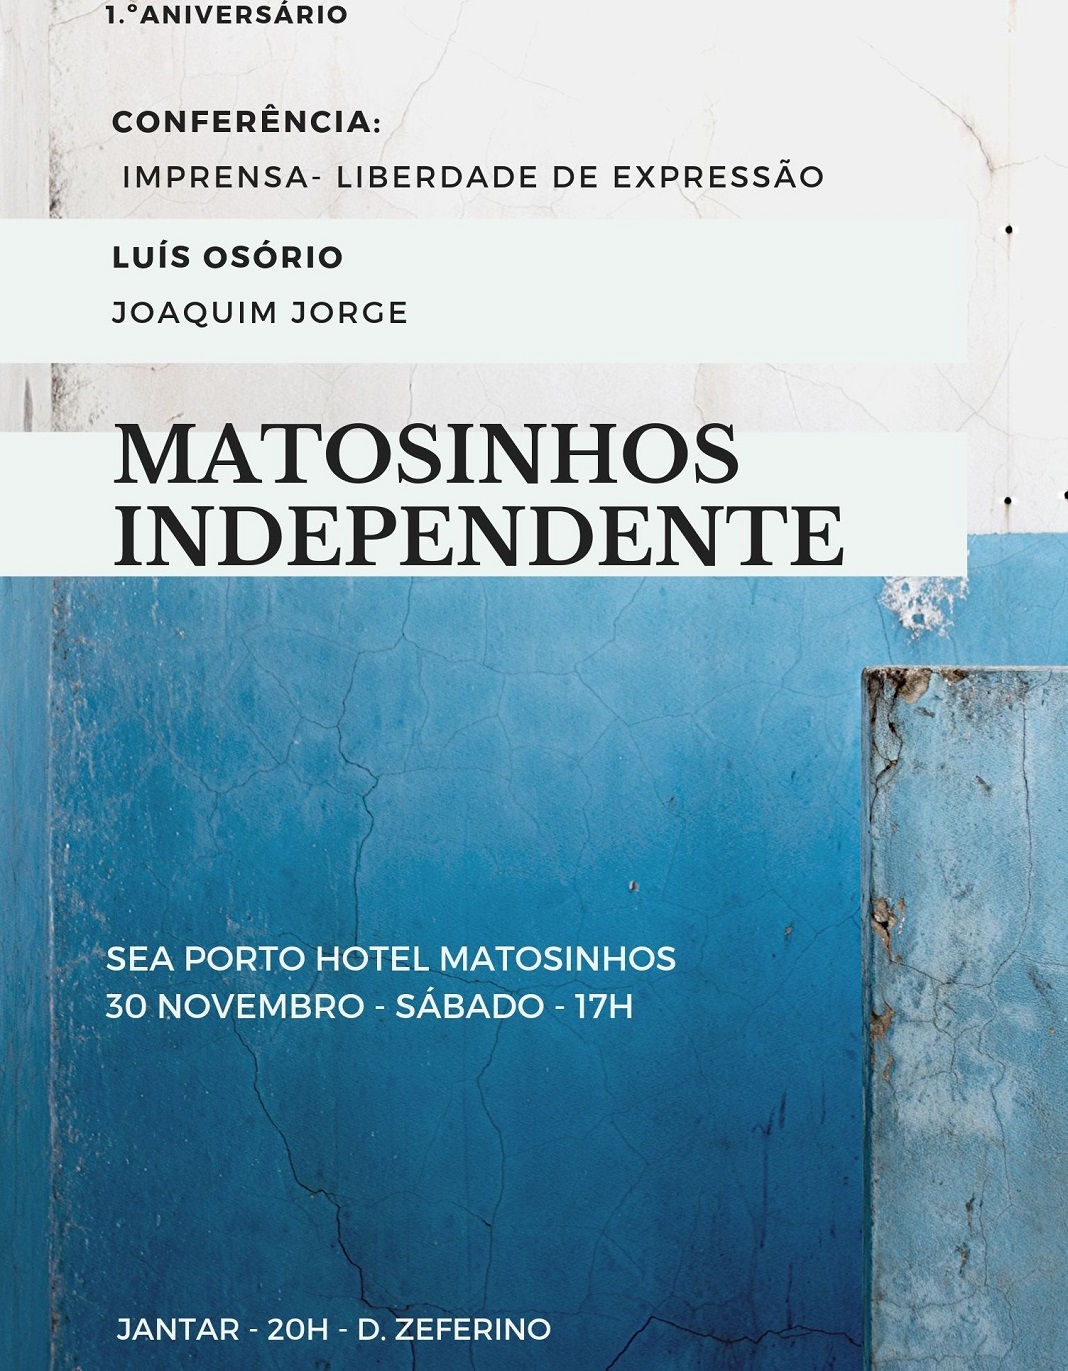 Matosinhos Independente realiza conferência “A Imprensa e a Liberdade de Expressão”